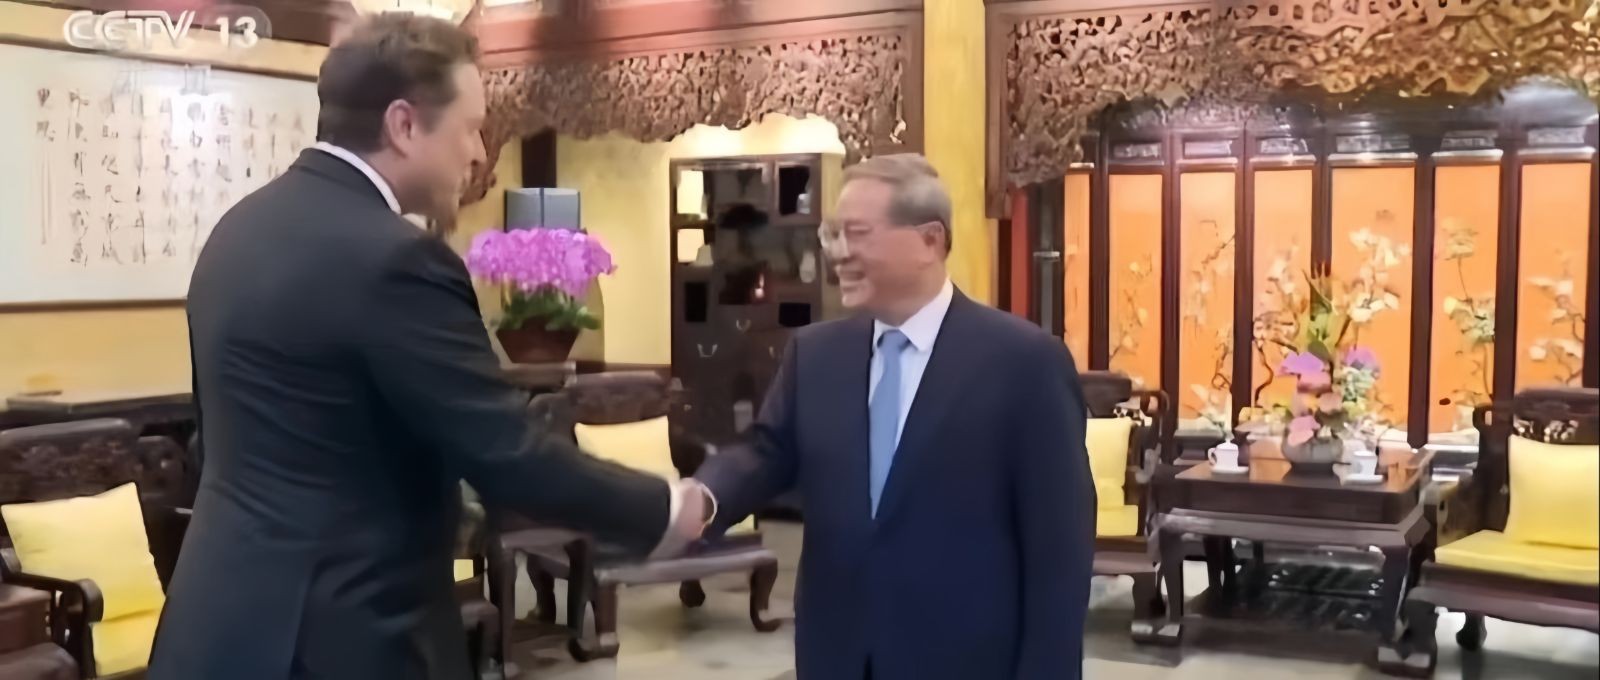 美国企业家马斯克与中国总理李强往事